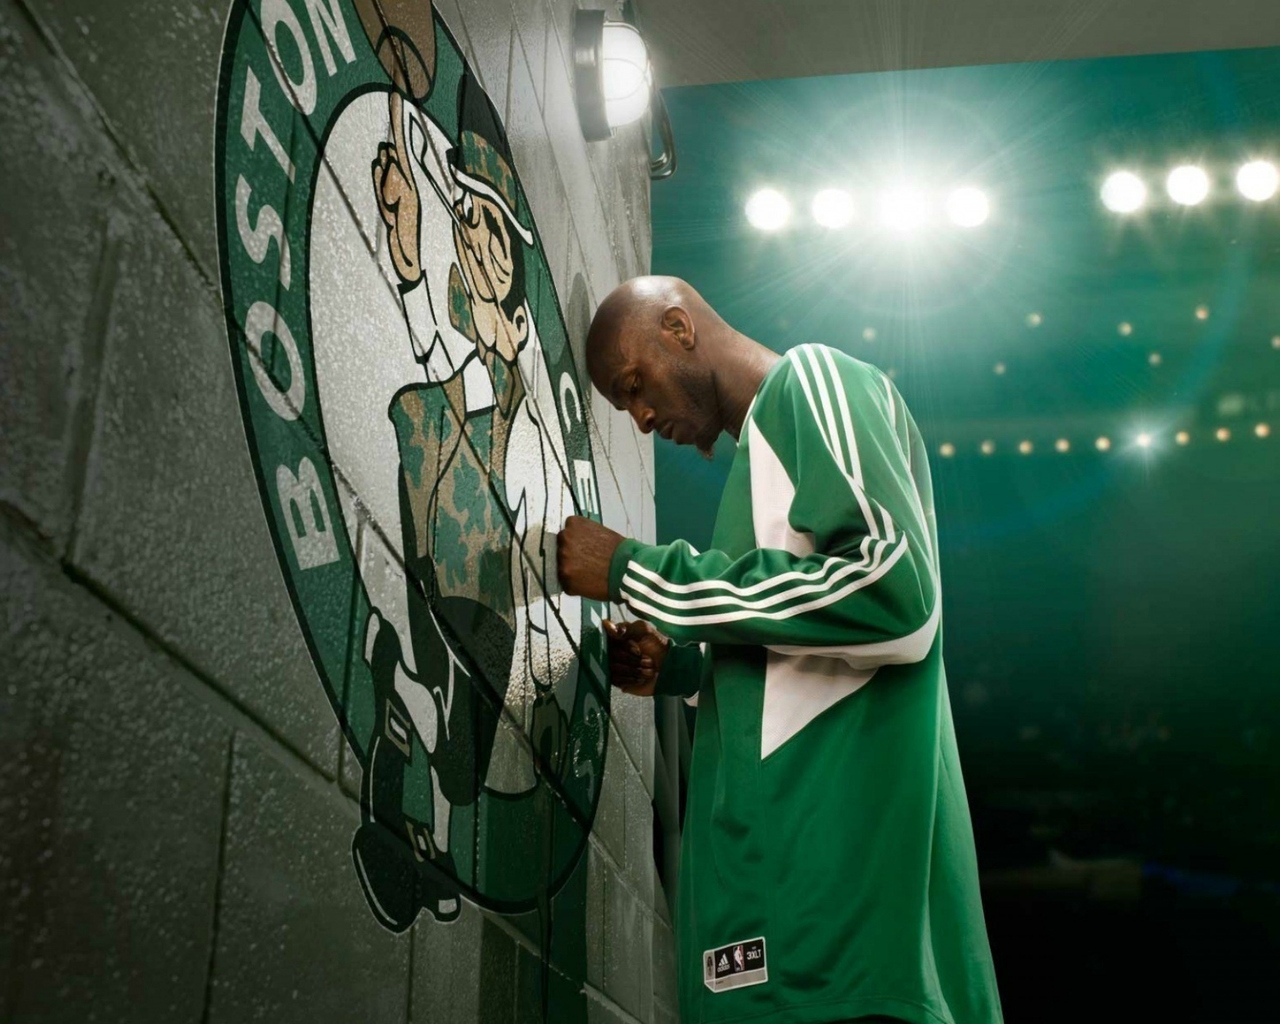 Kevin Garnett Boston Celtics for 1280 x 1024 resolution